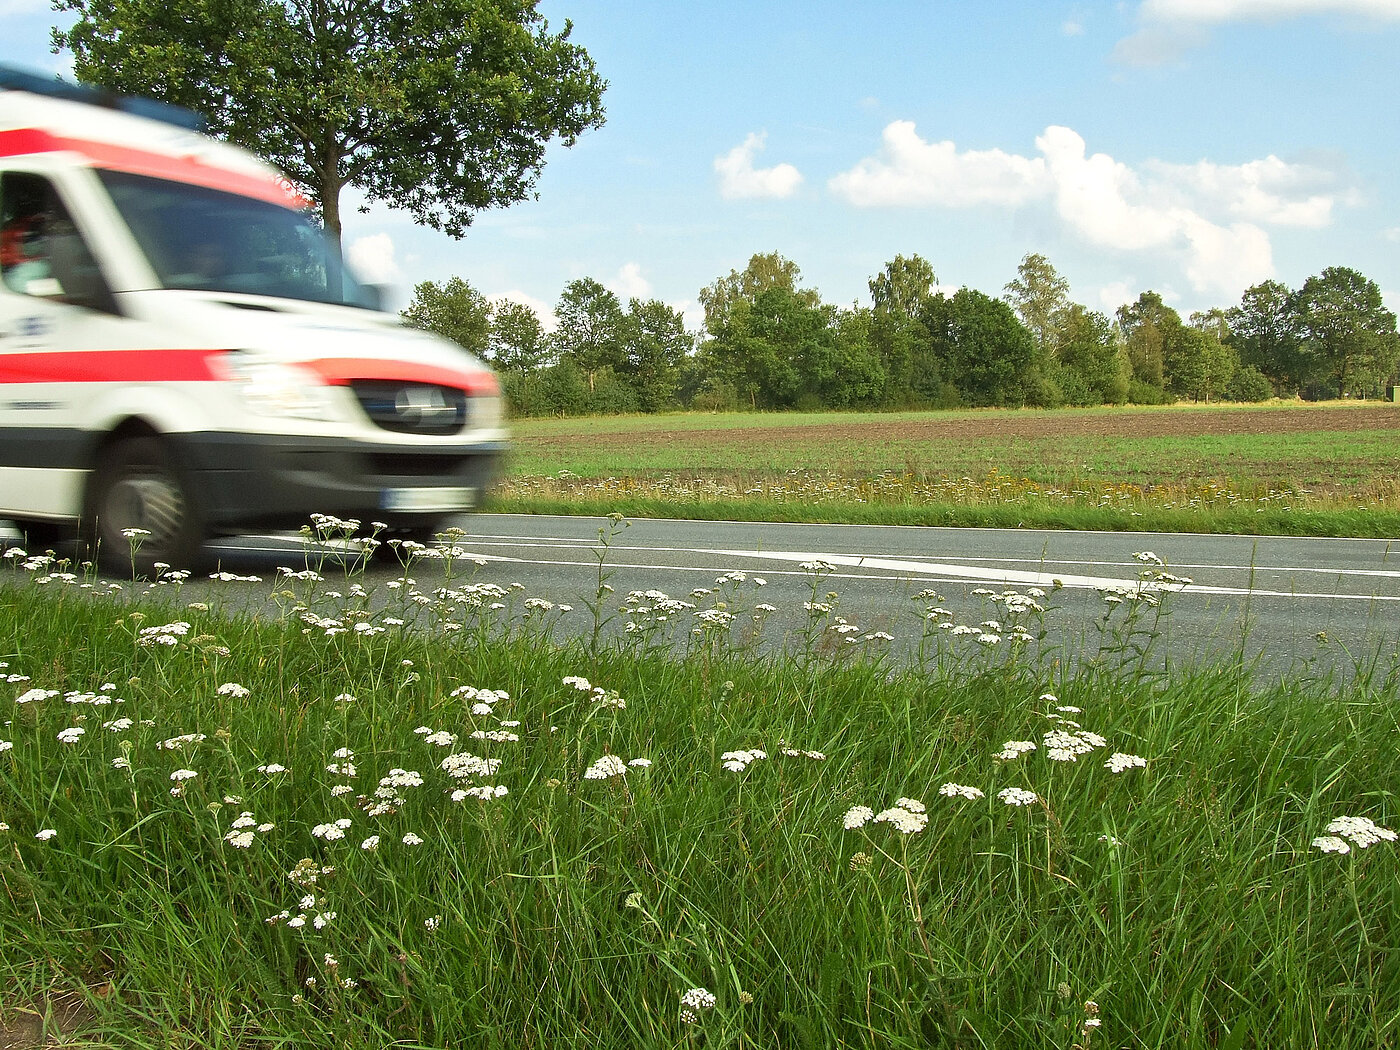 Bild: Ein Feld mit Blumen. In der Mitte läuft eine Straße, auf der ein Rettungswagen fährt.